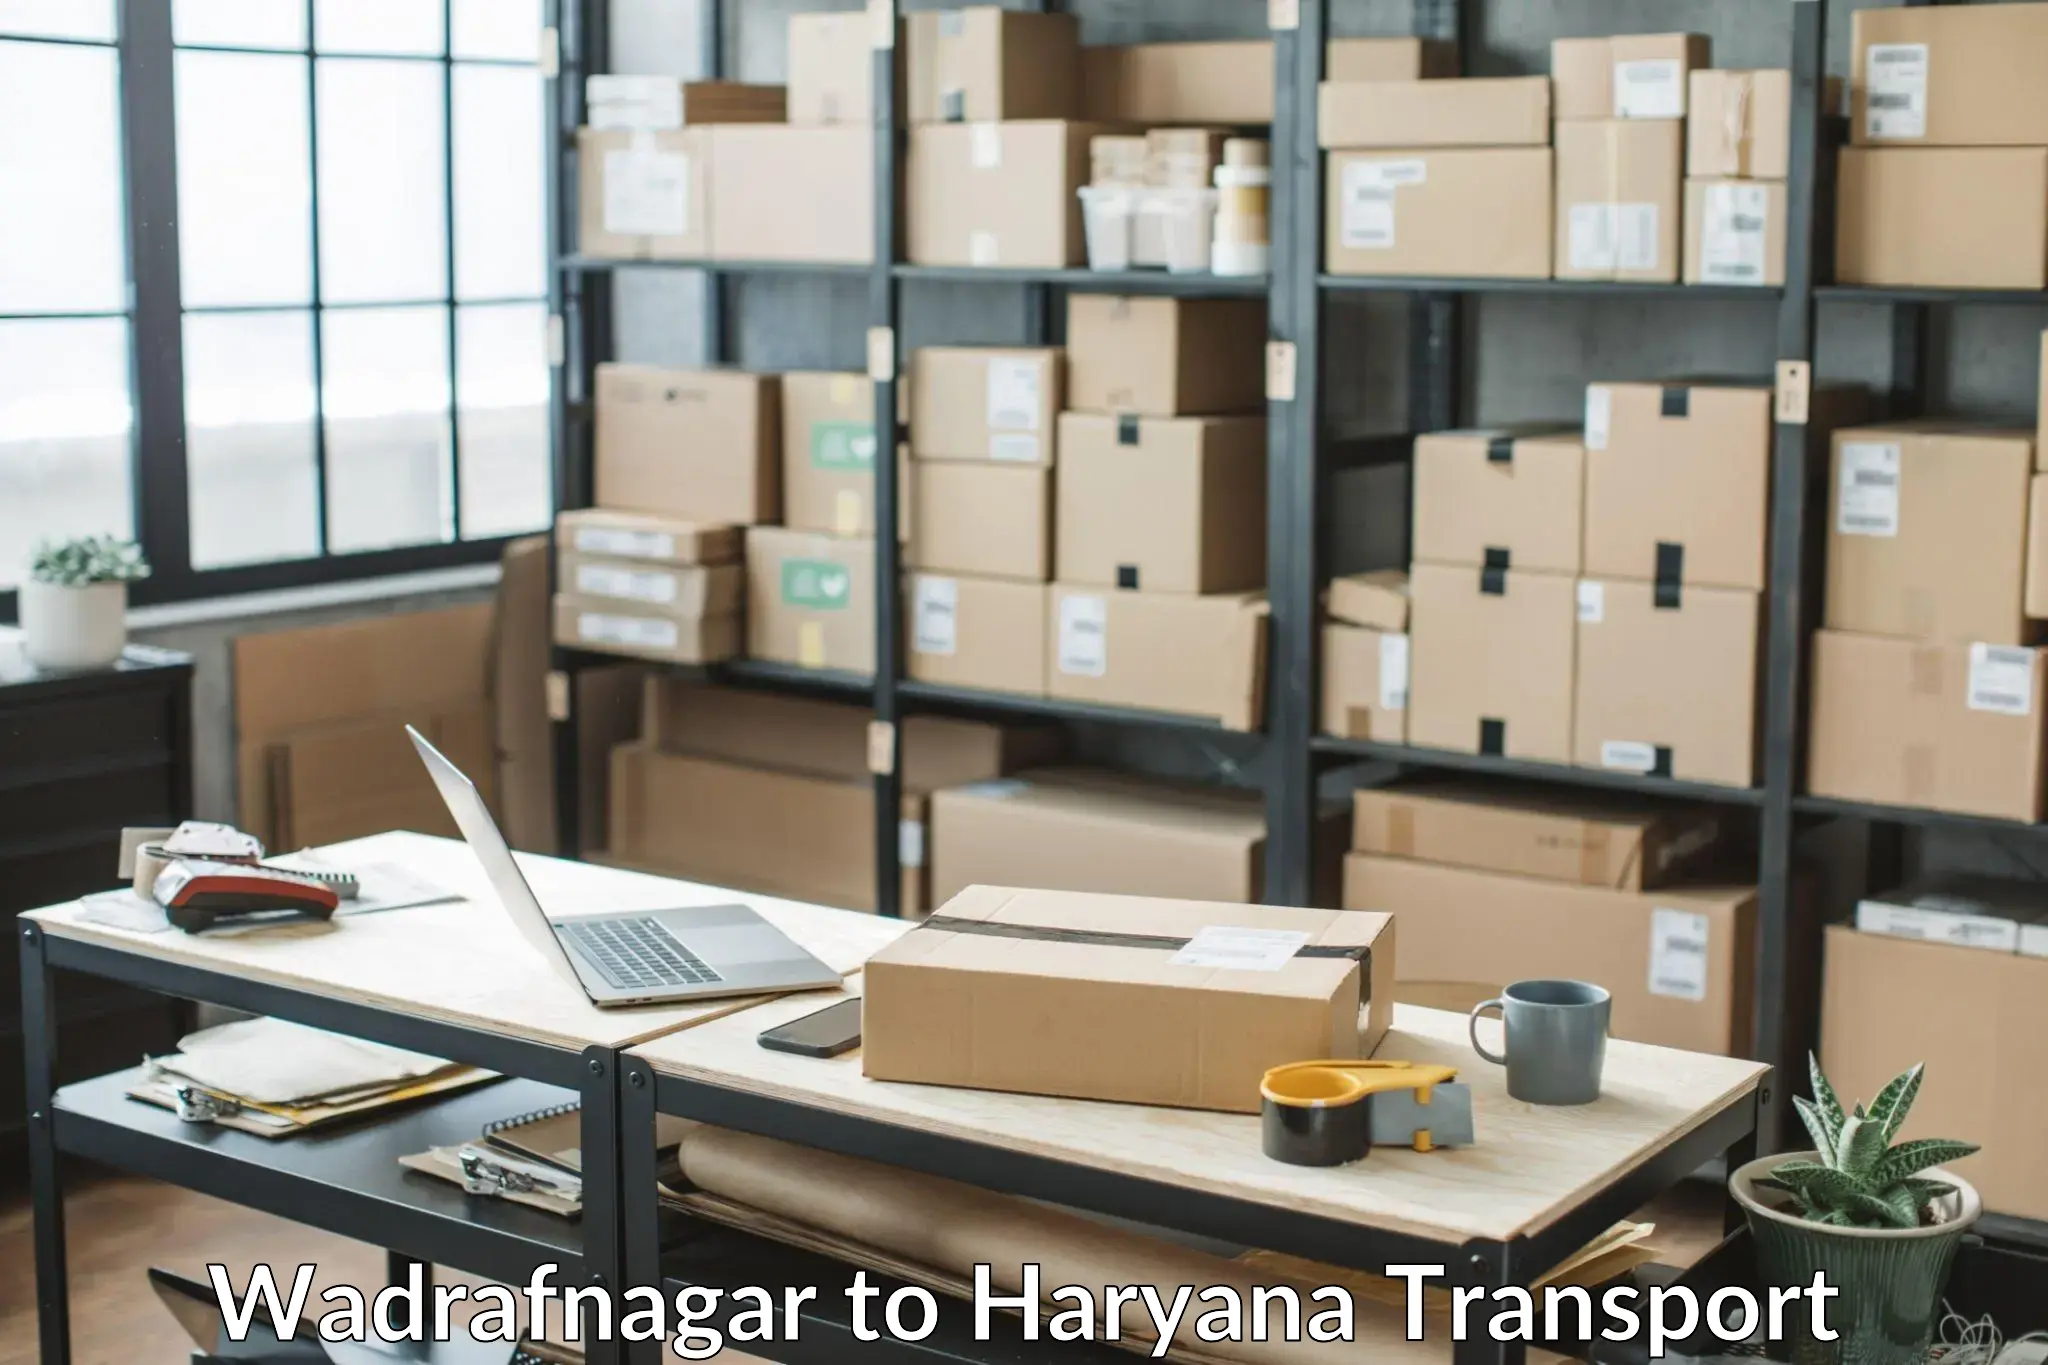 Logistics transportation services Wadrafnagar to Hodal